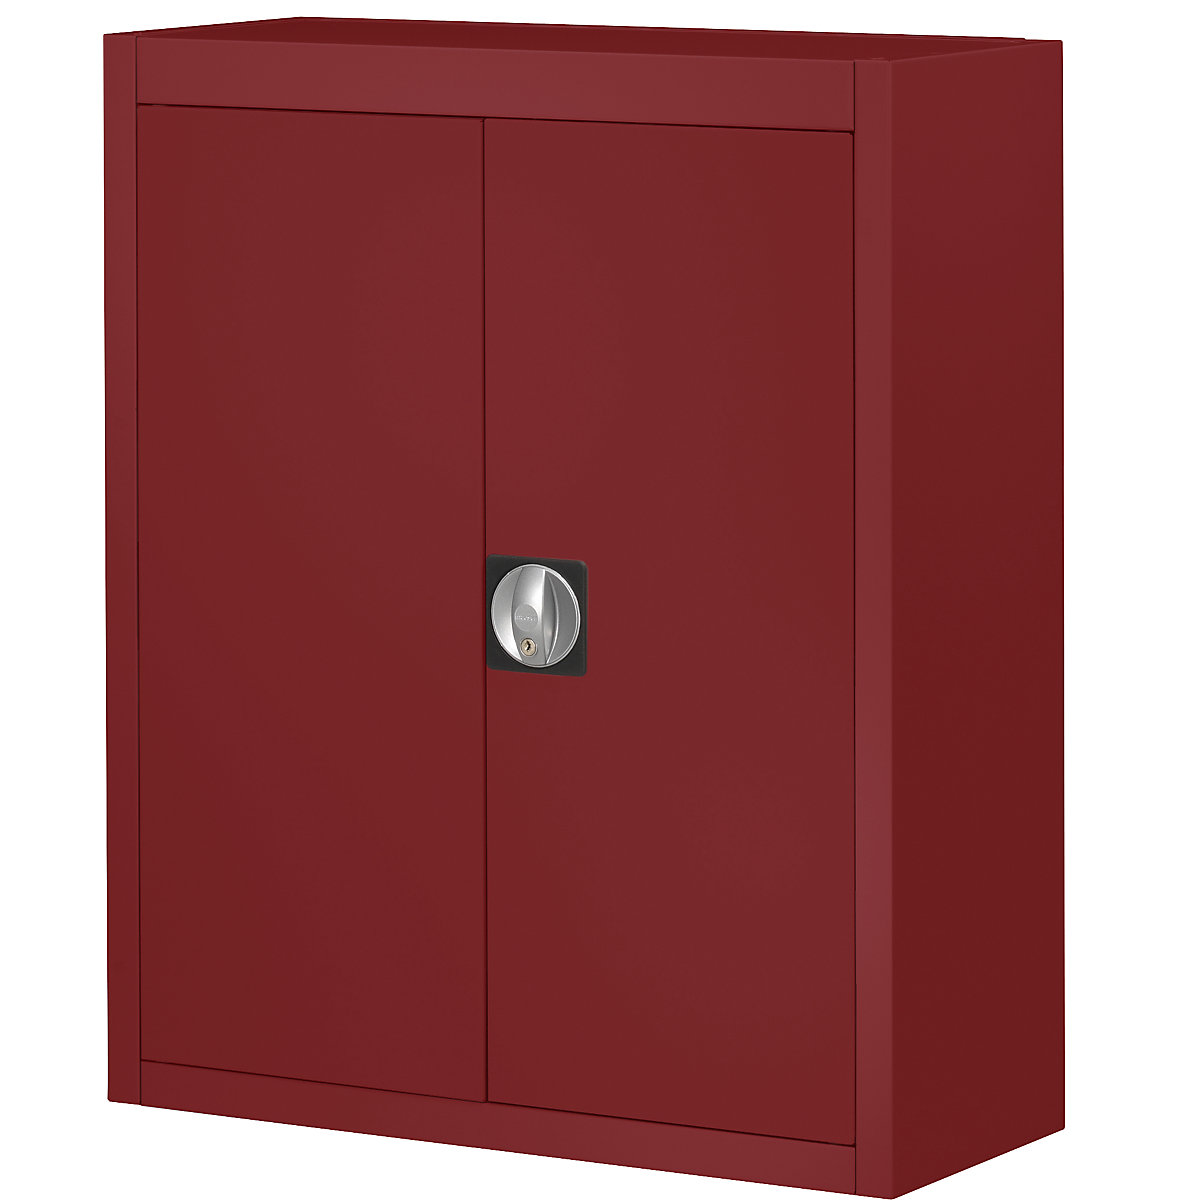 Skladiščna omara, brez odprtih skladiščnih posod – mauser, VxŠxG 820 x 680 x 280 mm, ena barva, rdeča, od 3 kosov-3